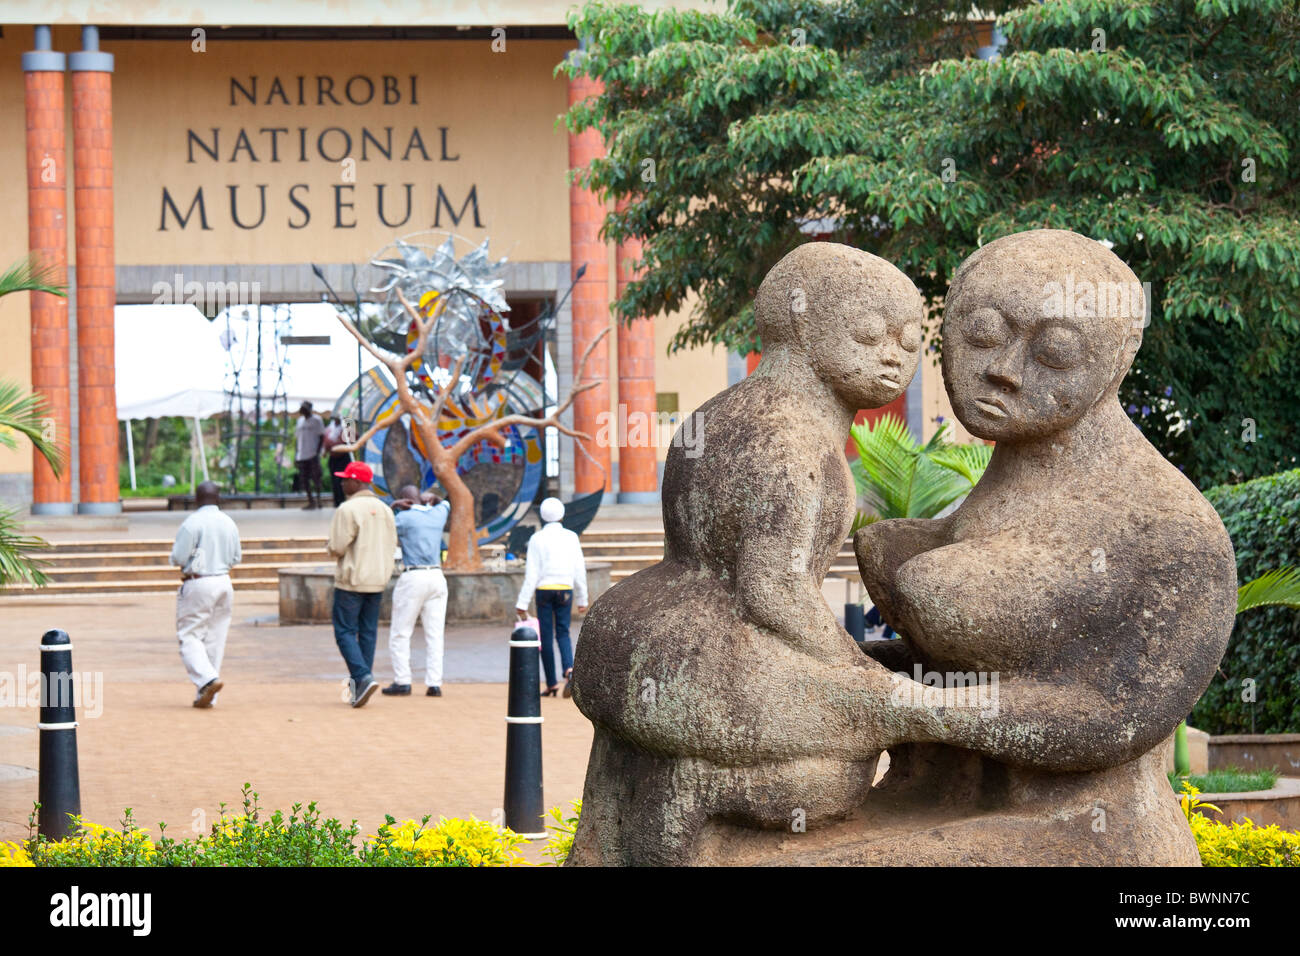 Nairobi National Muesum, Nairobi, Kenya Stock Photo